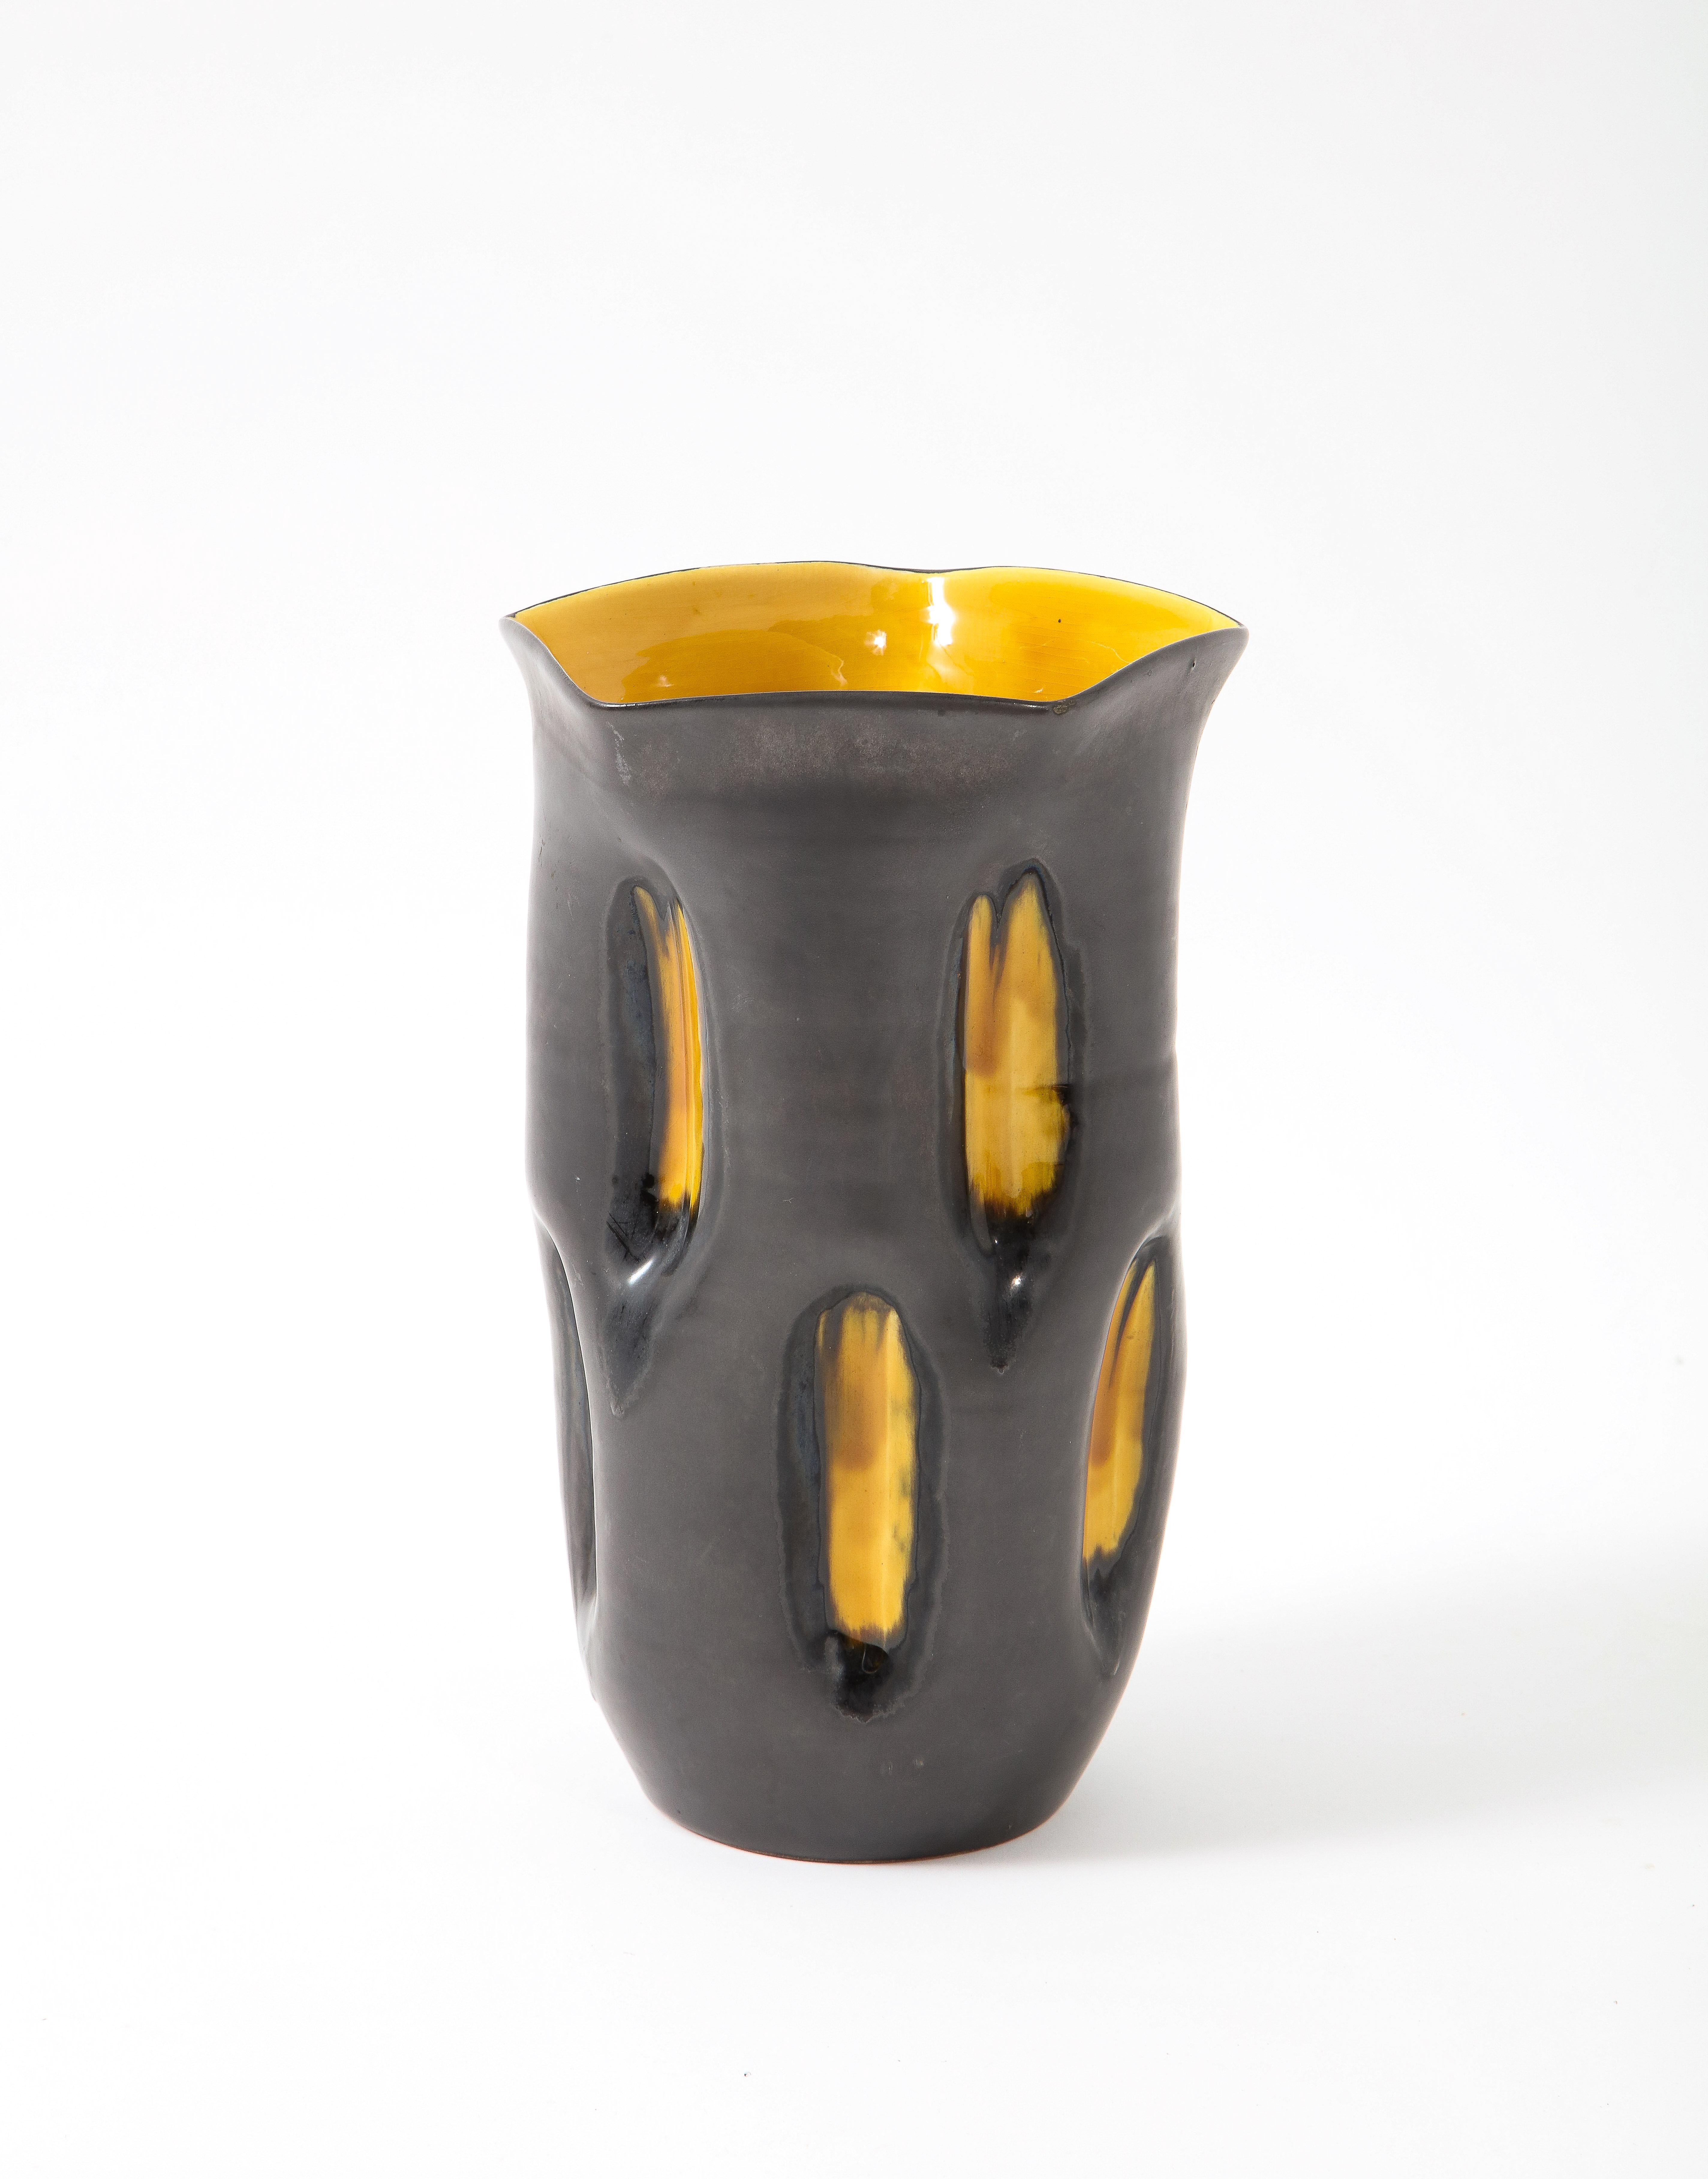 Skurrile Keramikvase mit zweifarbiger Glasur: Rotgussgrau für den Korpus und ein glänzendes Gelb für die Vertiefungen auf der Oberfläche und im Inneren.